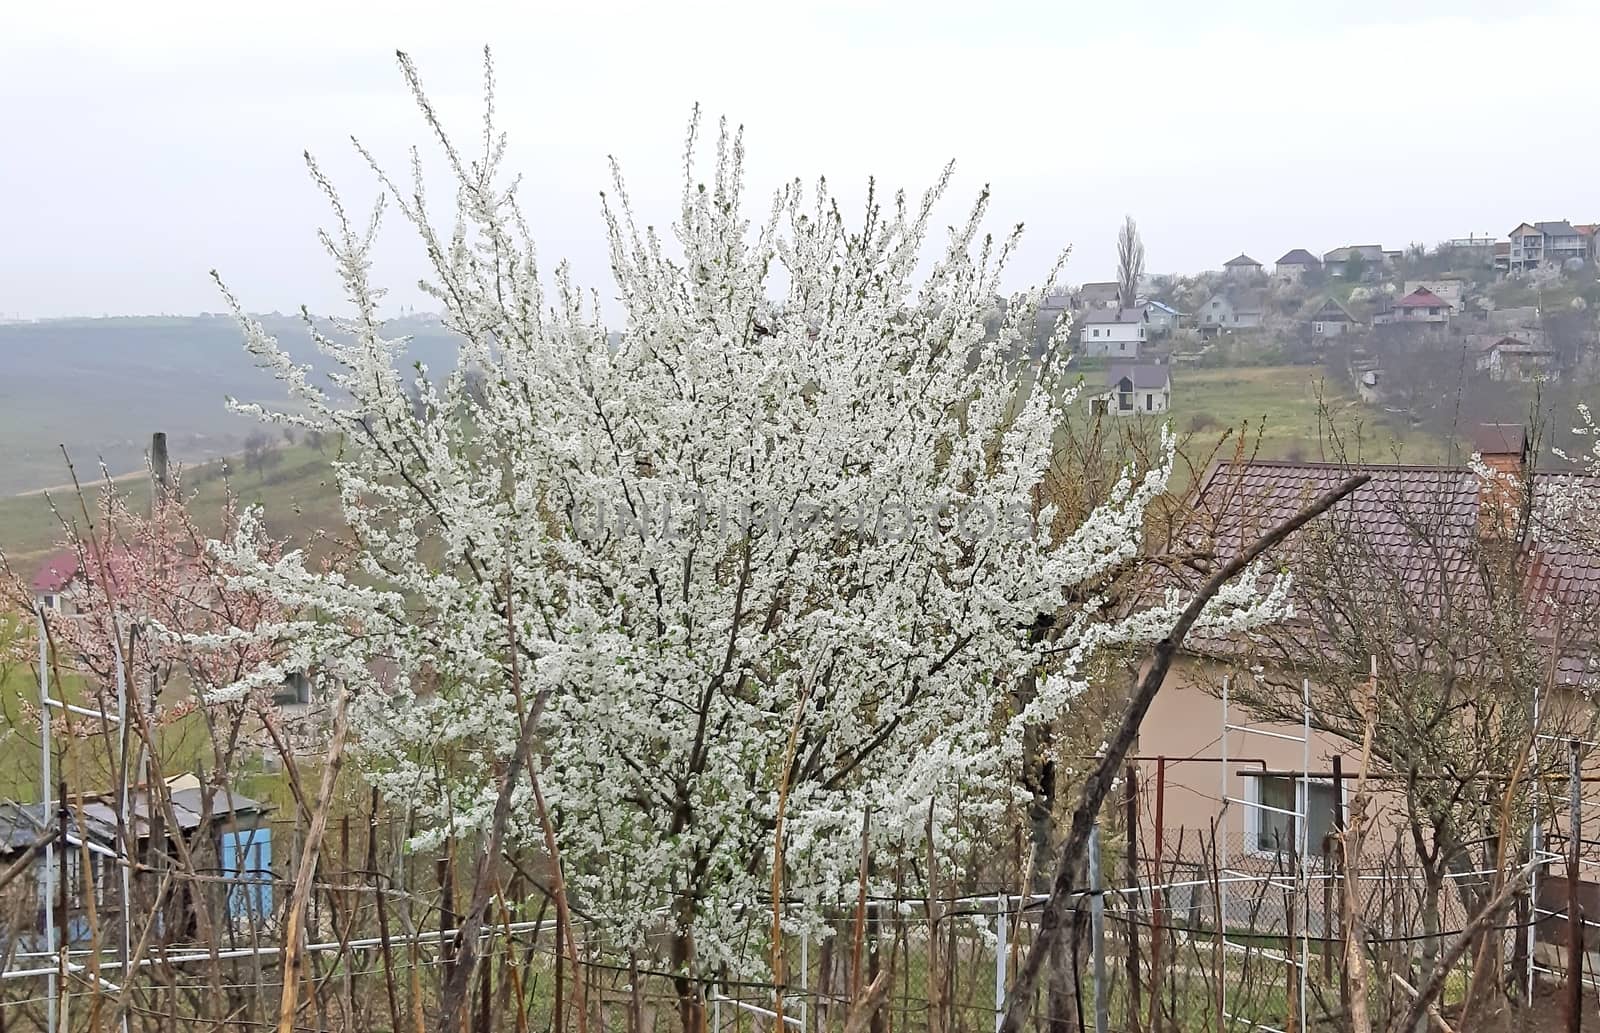 Tree full of flowers in the spring. Prunus cerasifera.